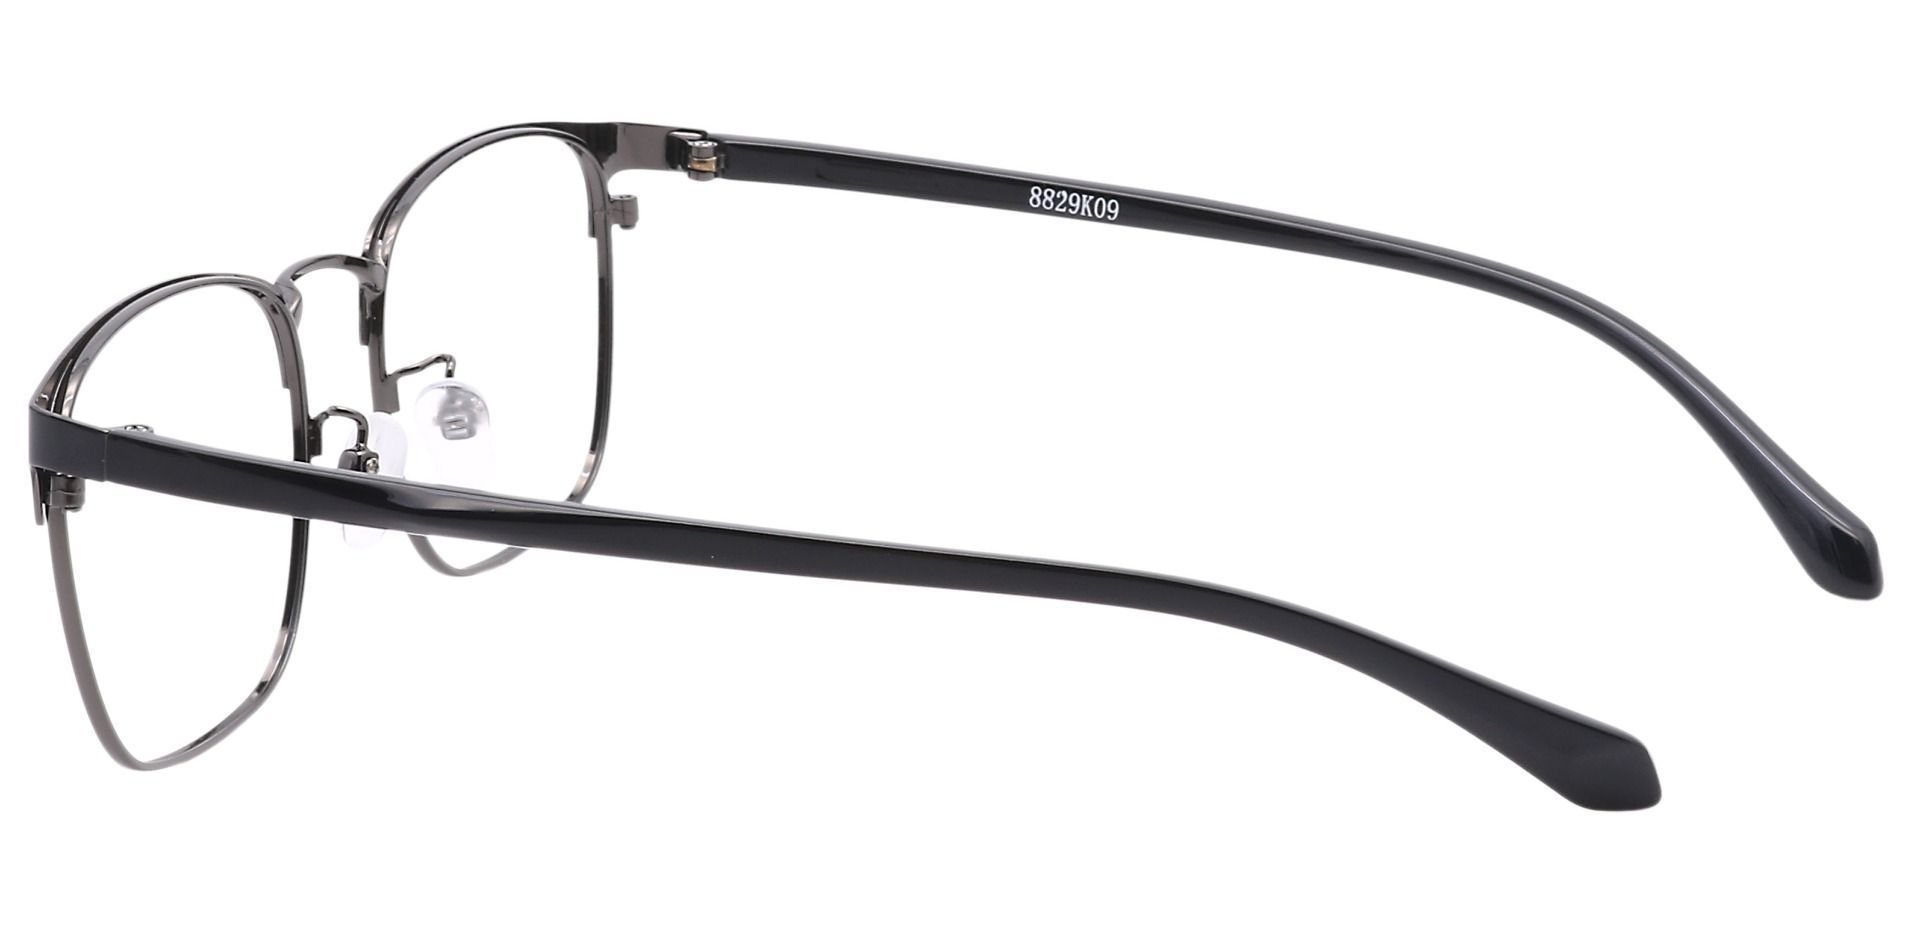 Valdez Browline Lined Bifocal Glasses - Black